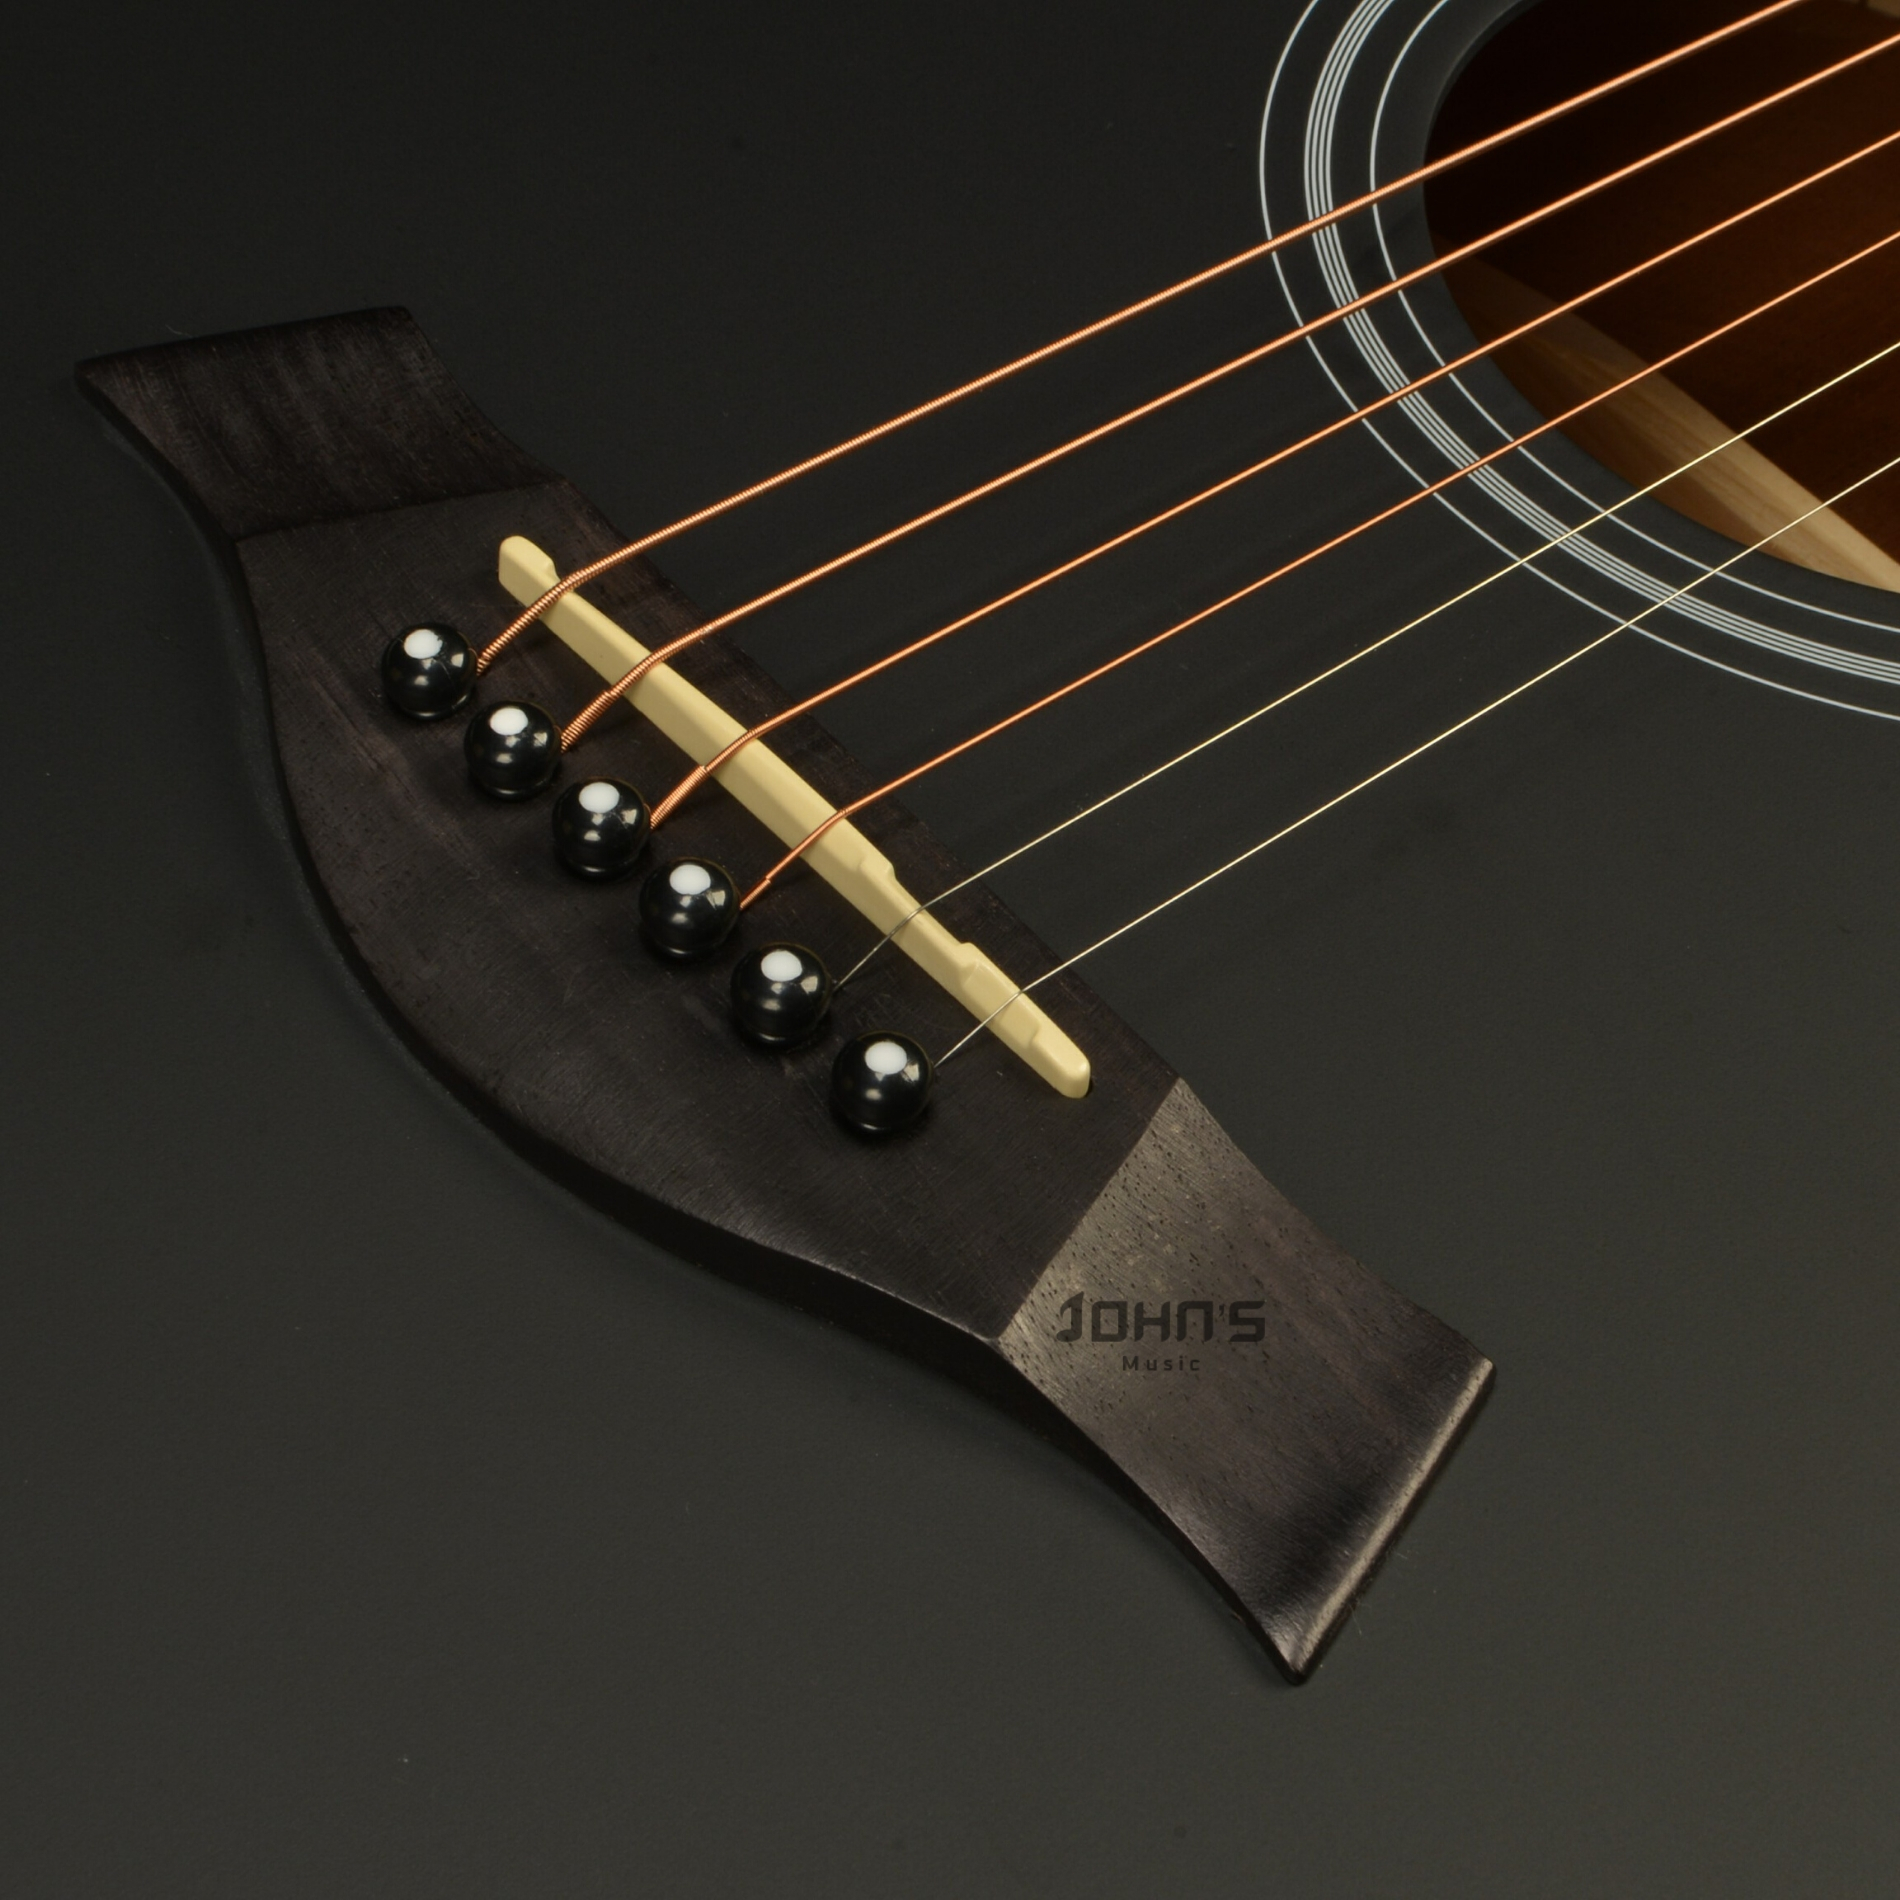 Kepma A1c acoustic guitar matt black